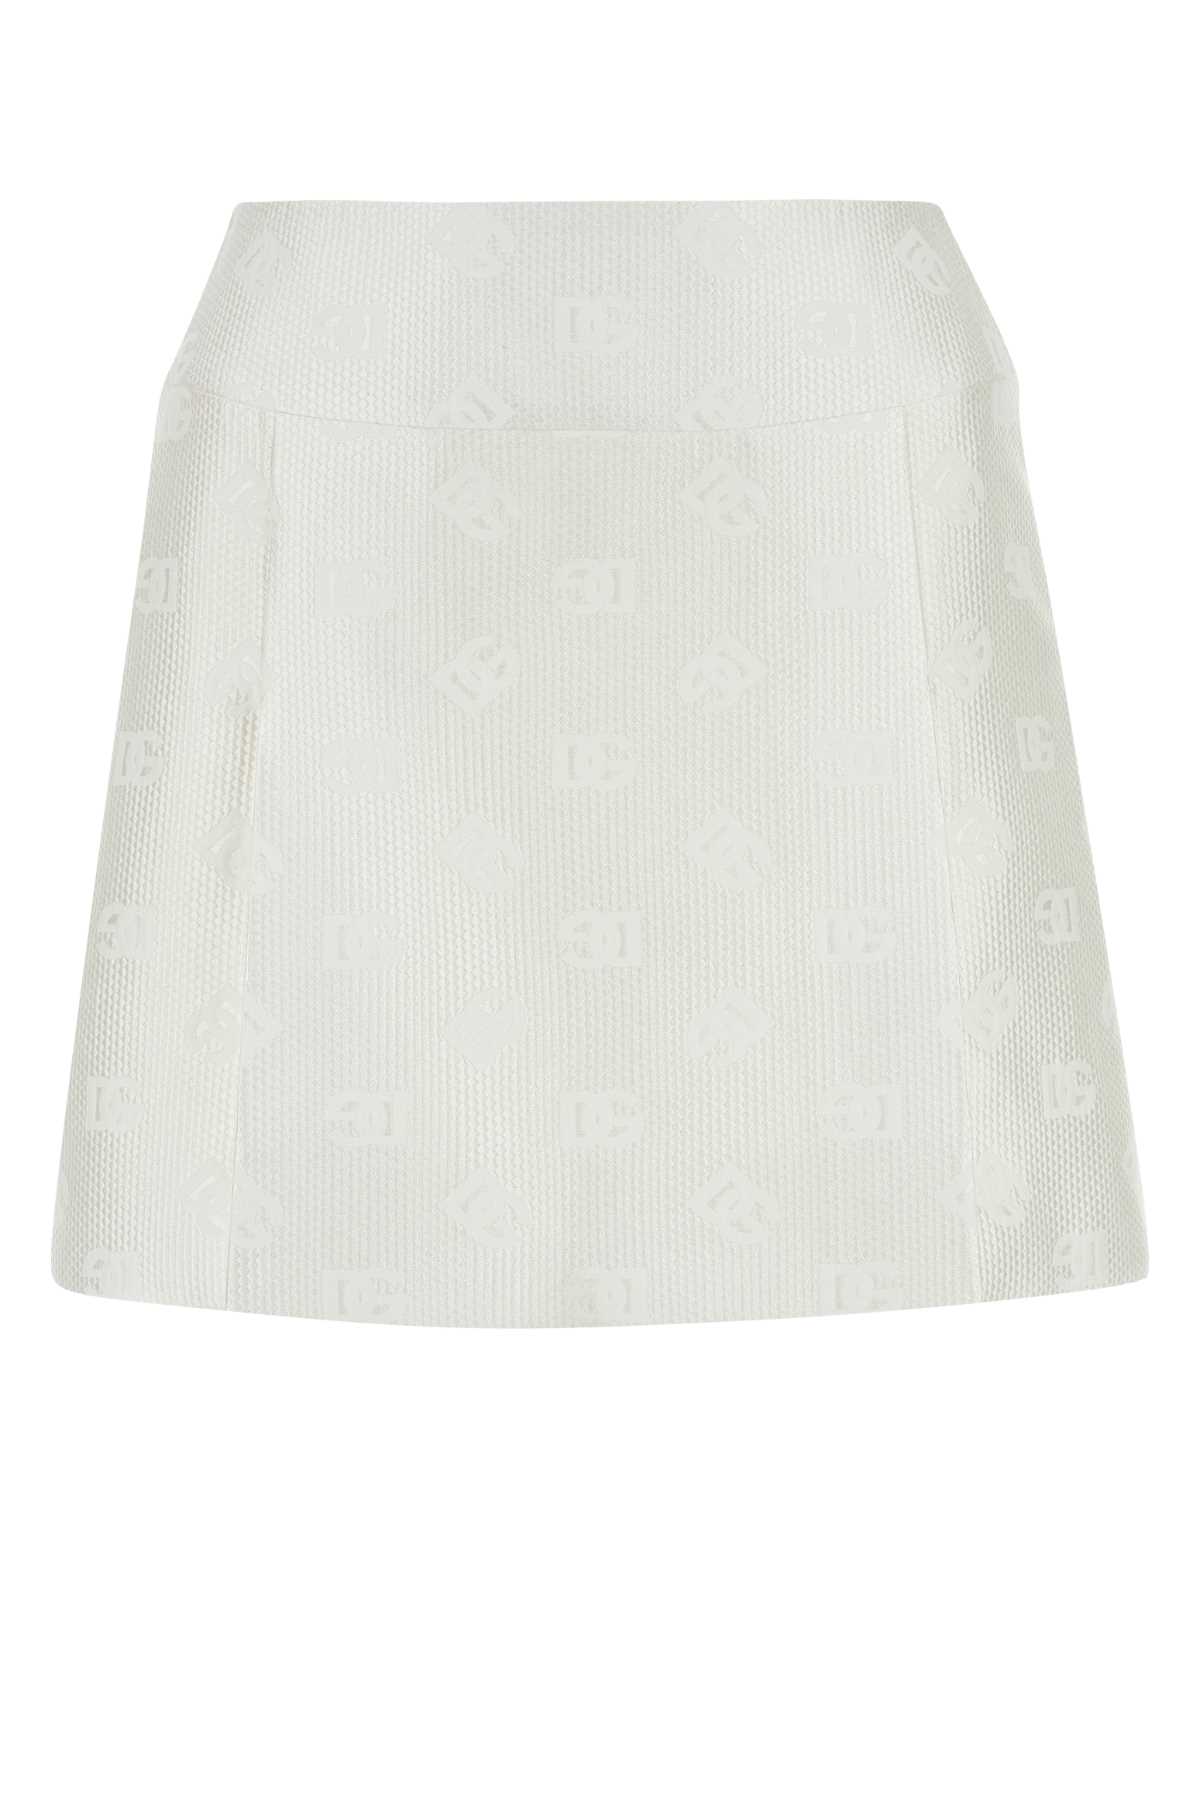 White Jacquard Mini Skirt